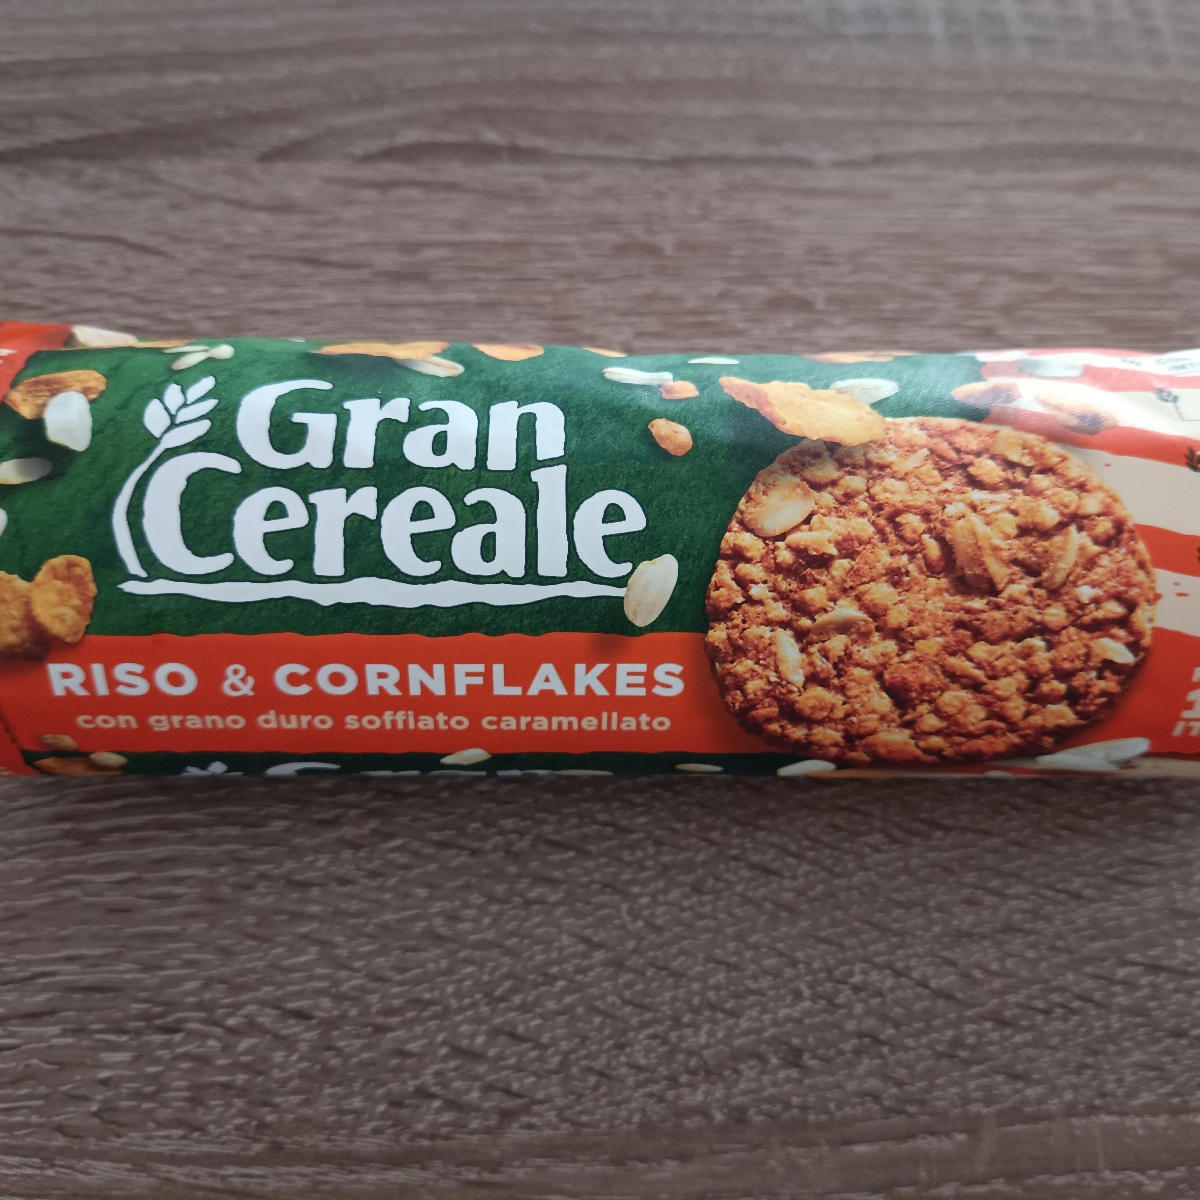 Gran Cereale riso e cornflakes Reviews